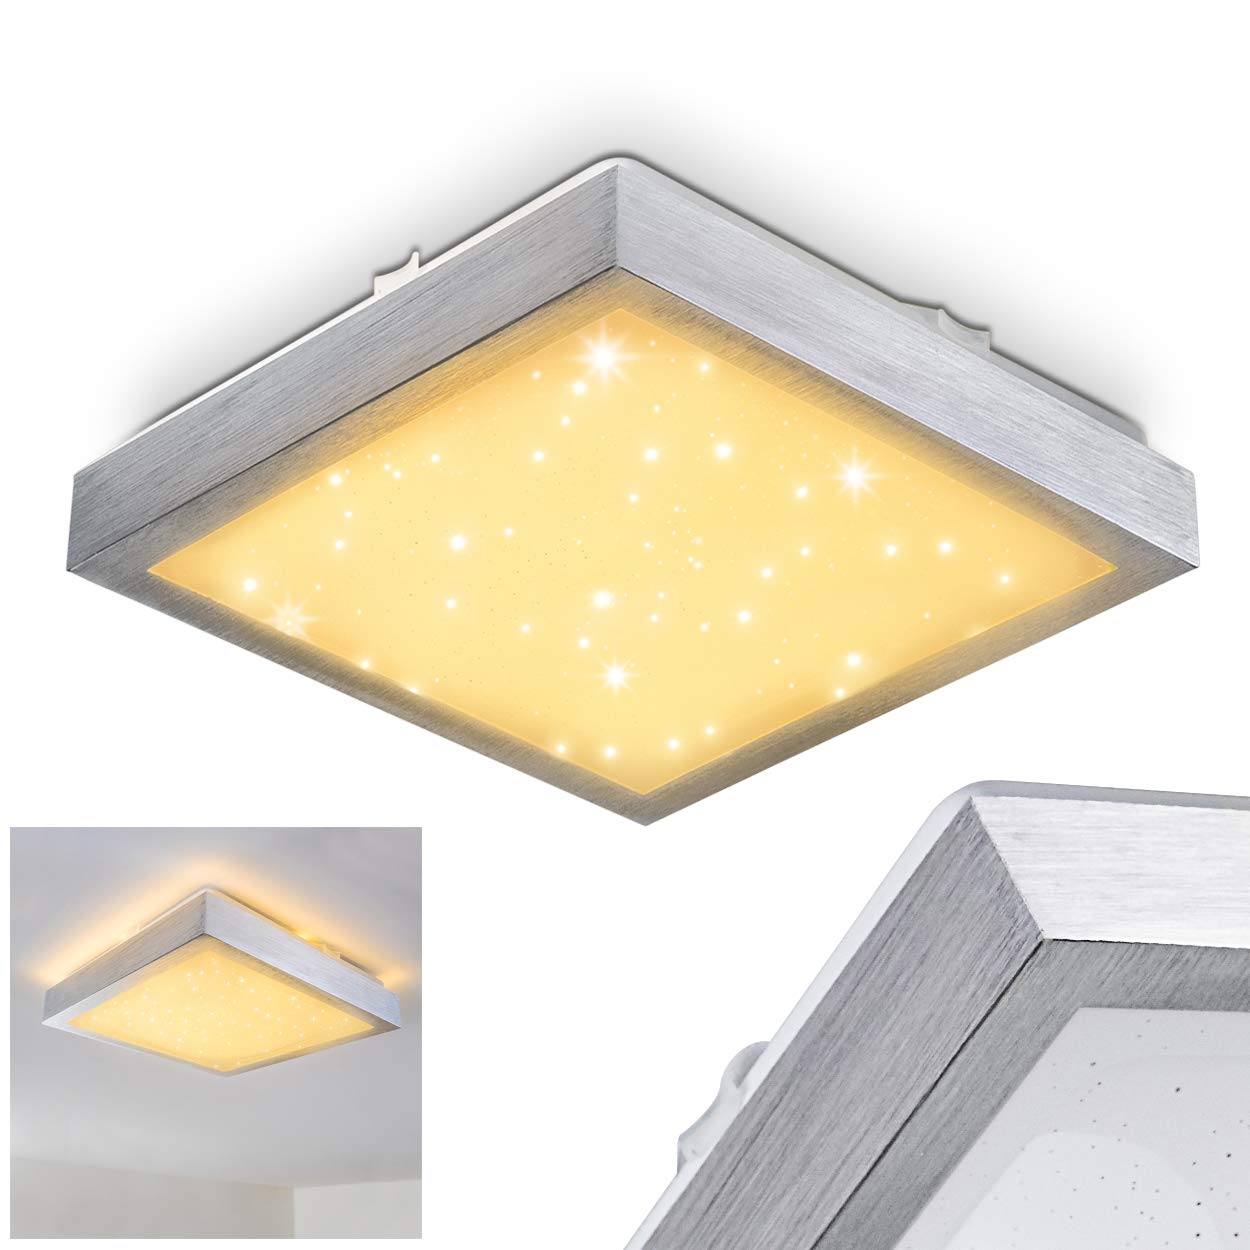 LED Deckenleuchte Sora, eckige aus Metall in Silber mit Sternenhimmel-Optik, 12 Watt, 900 Lumen, Lichtfarbe 3000 Kelvin (warmweiß), IP44, auch für das Badezimmer geeignet